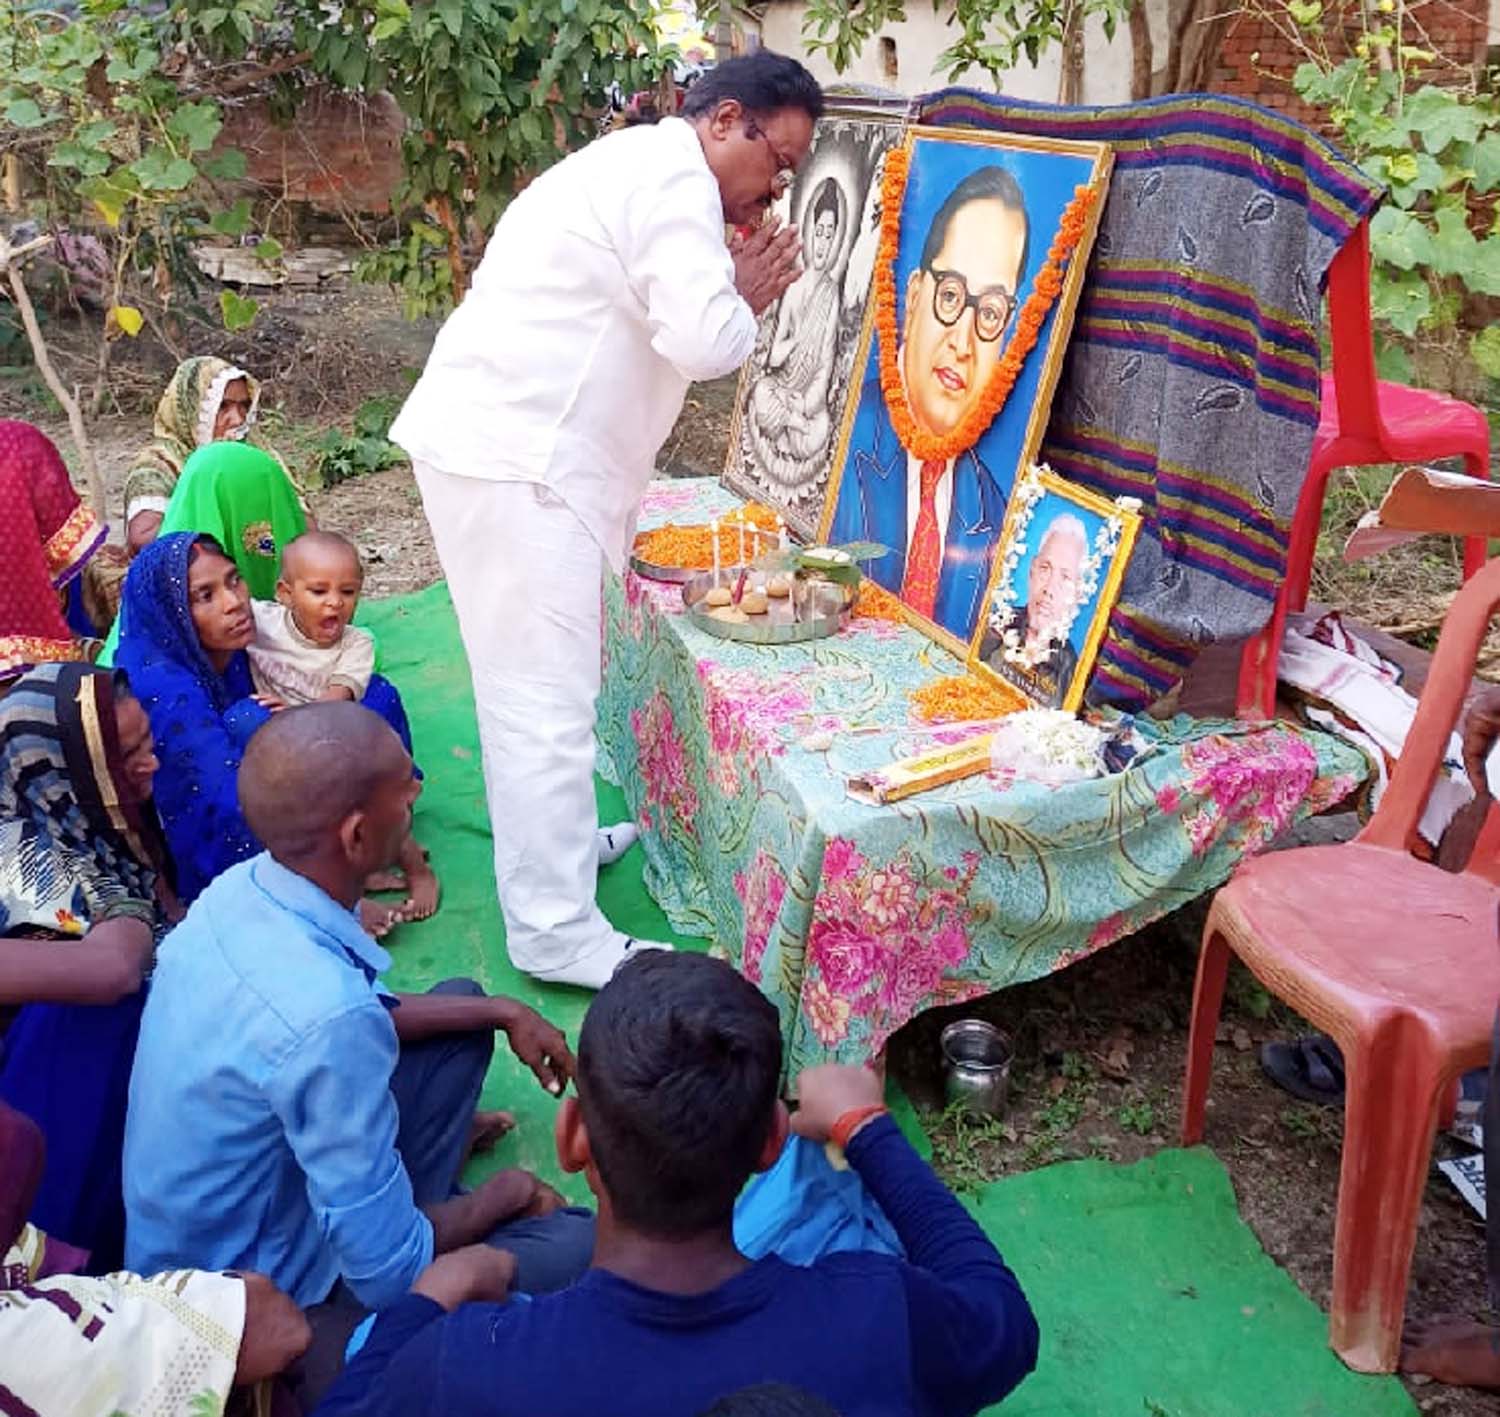 समाजसेवी बेदी राम ने गौतम बुद्ध व बाबा साहब के जीवन पर डाला प्रकाश | #TEJASTODAY जौनपुर का नं. 1 न्यूज पोर्टल जलालपुर, जौनपुर। स्थानीय क्षेत्र के ग्रामसभा कुसियां में शुक्रवार को श्रद्धांजलि समारोह का आयोजन हुआ जहां पहुंचे समाजसेवी बेदी राम ने सर्वप्रथम भगवान गौतम बुद्ध और संविधान निर्माता बाबा साहब डा. भीम राव अंबेडकर के चित्र पर पुष्प अर्पित करके श्रद्धांजलि दिया। तत्पश्चात् श्री राम ने दोनों के जीवन पर प्रकाश डालते हुये उनके व्यक्तित्व एवं कृतित्व पर प्रकाश डाला। मालूम हो कि उक्त कार्यक्रम ग्रामसभा के निवासी लाल बहादुर के अकस्मात निधन पर किया गया था। इस अवसर पर रमेश कुमार, प्रदीप अंबेडकर, विनोद कुमार, दीपक सहित तमाम लोग उपस्थित रहे।